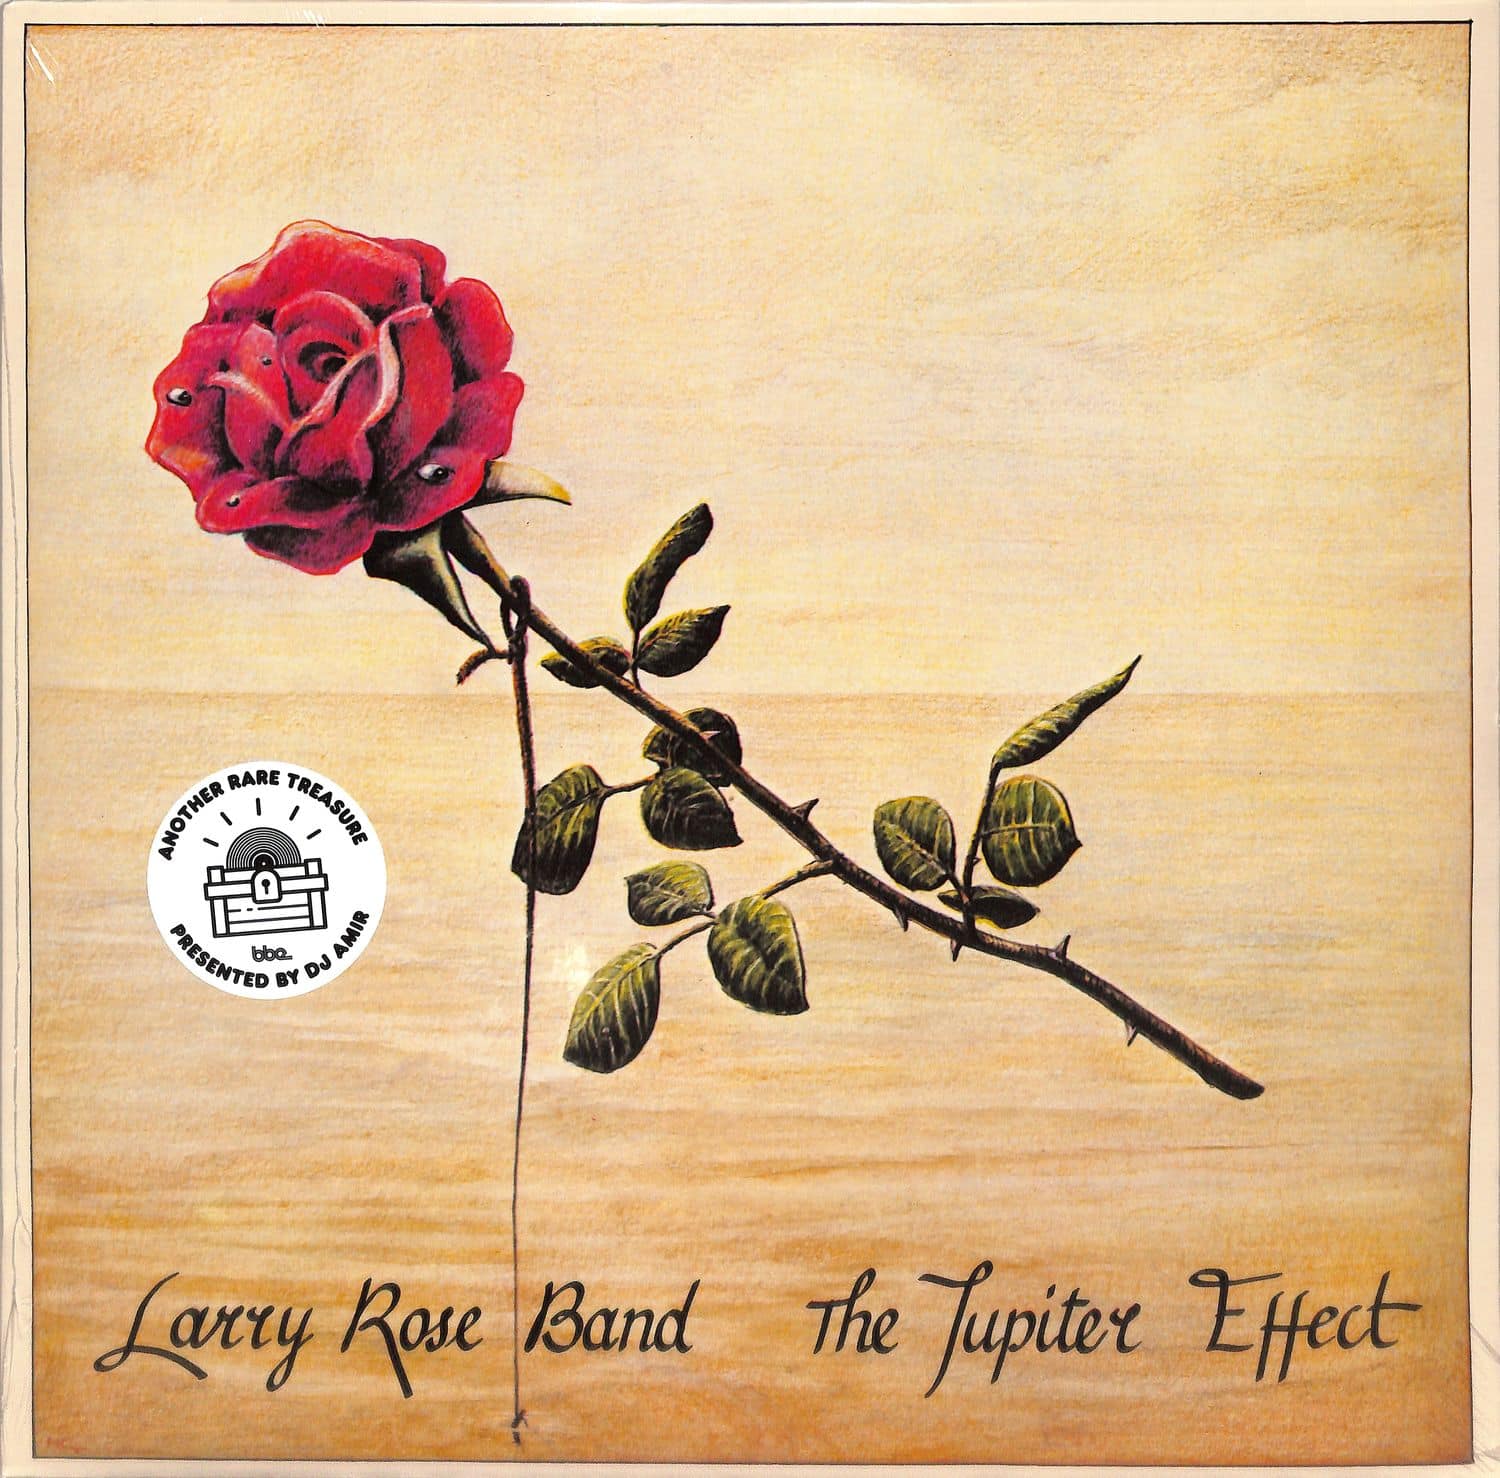 Larry Rose Band - THE JUPITER EFFECT 